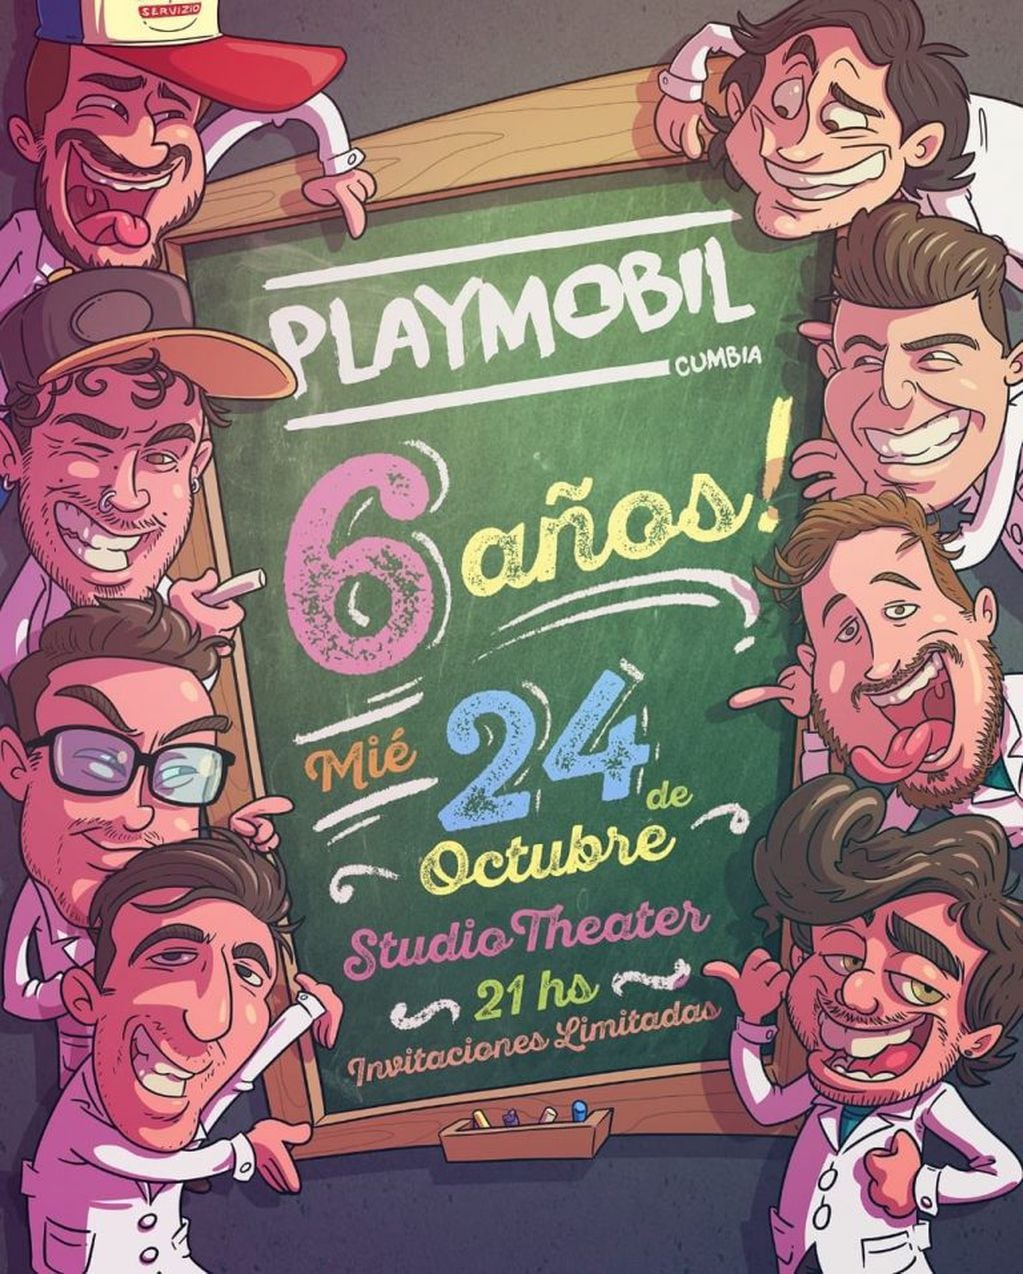 Playmobil celebra su sexto aniversario